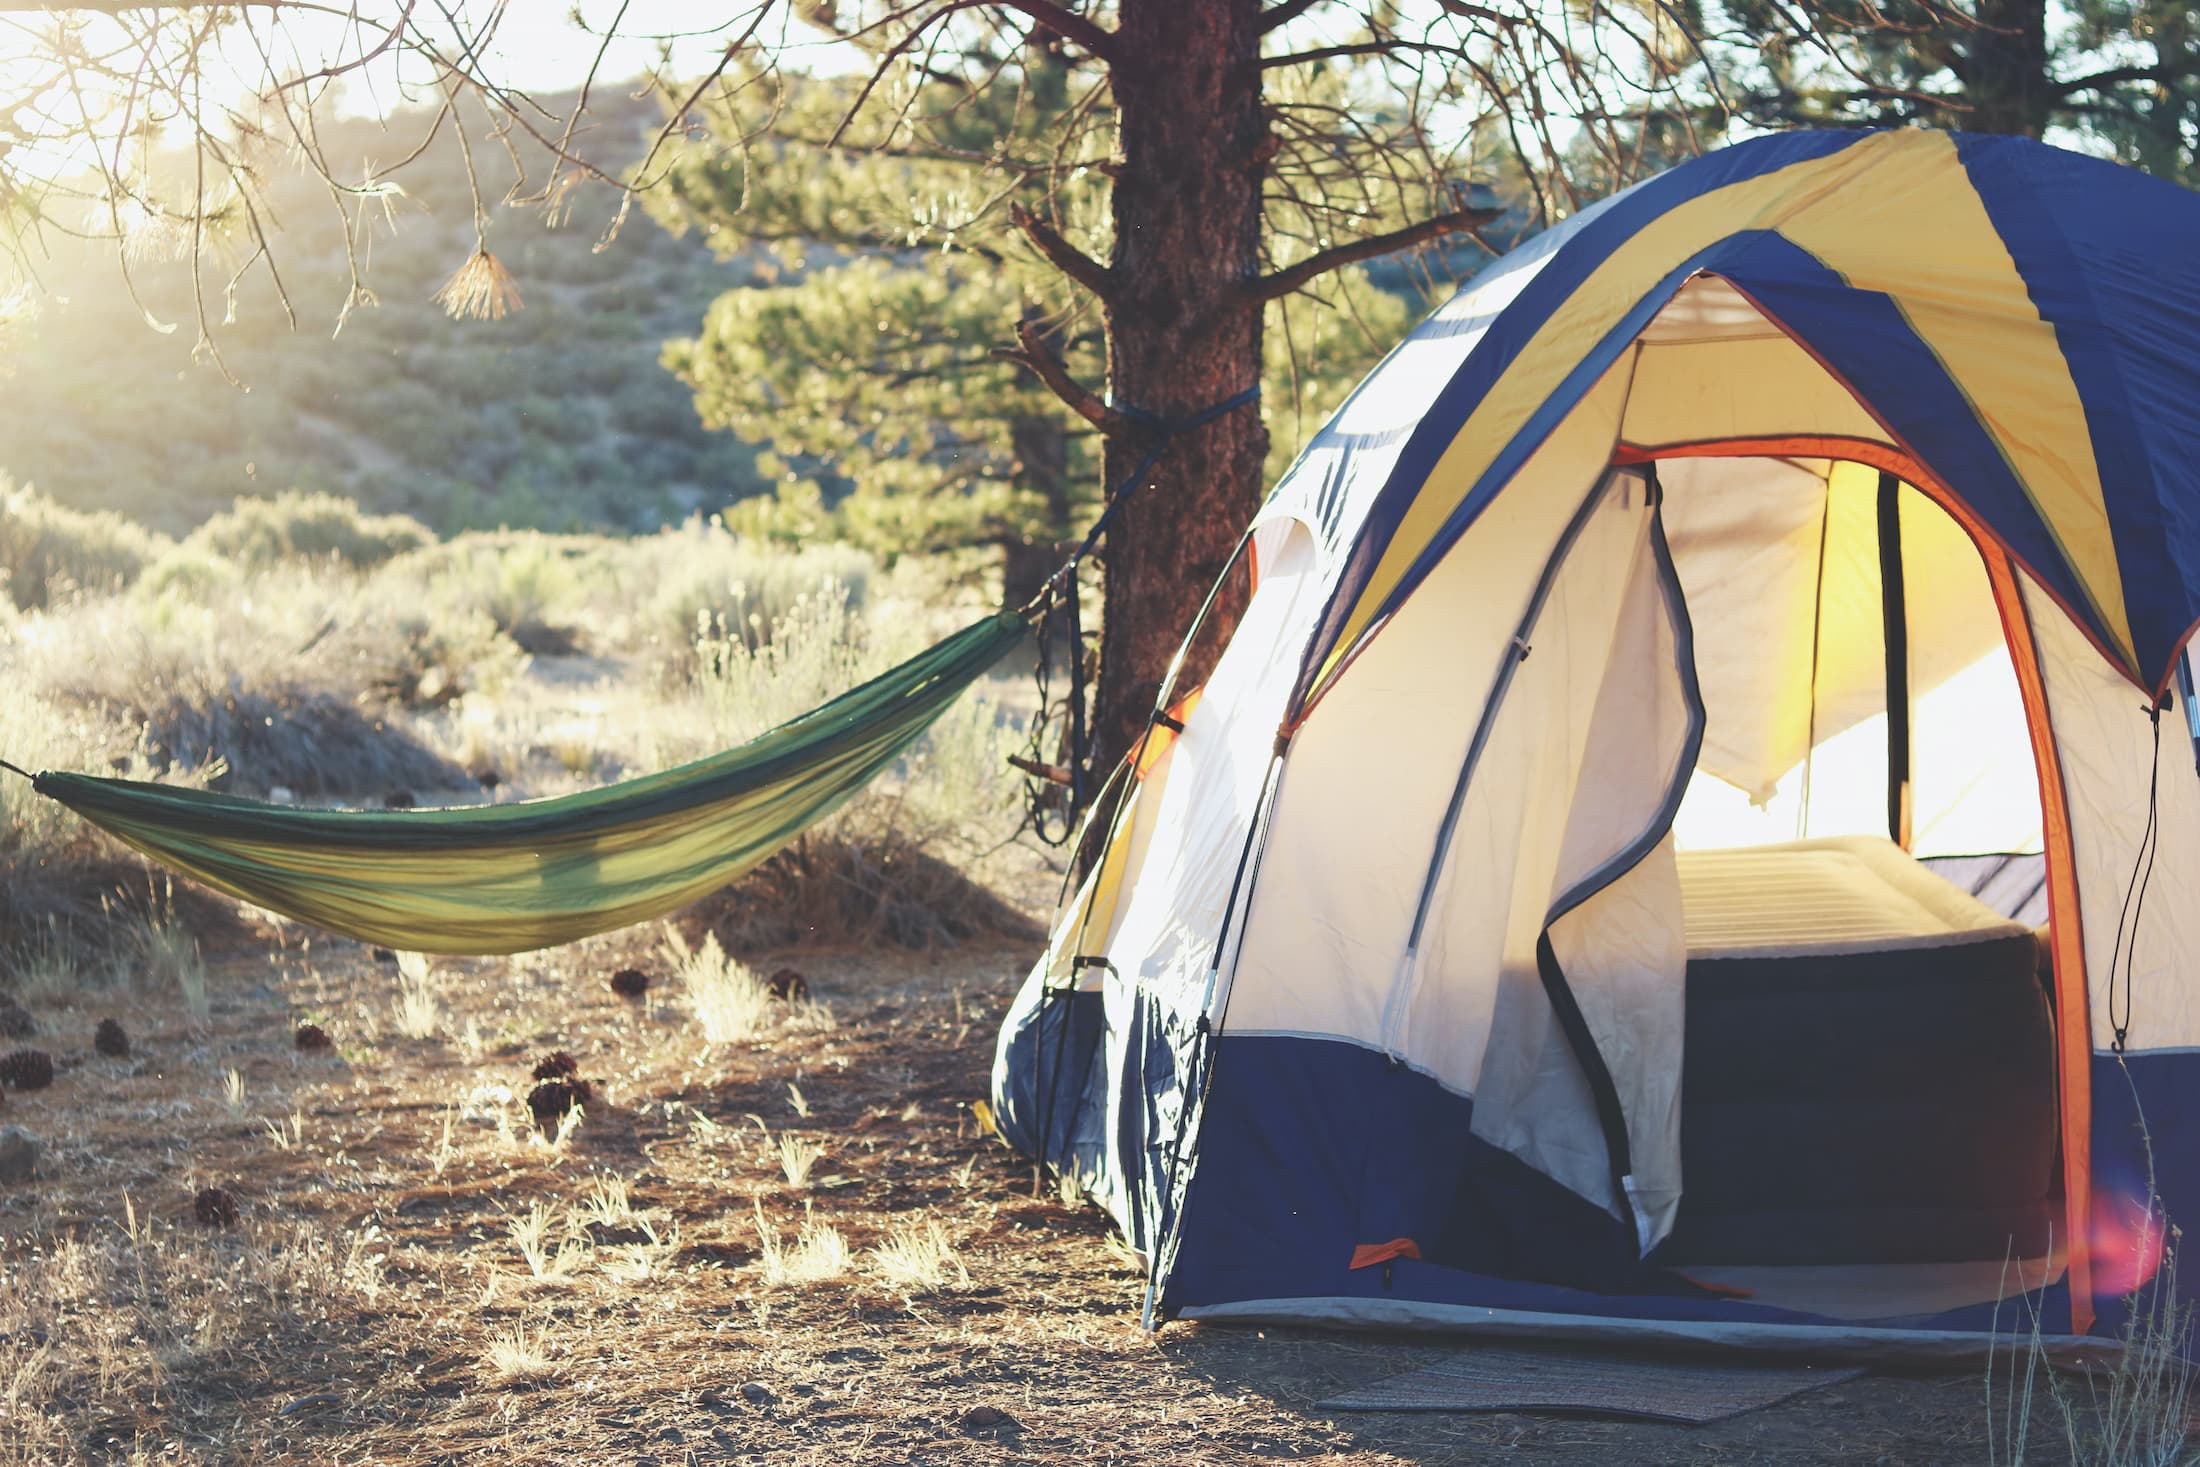 Attrezzatura per campeggio: cosa portare per una vacanza lunga